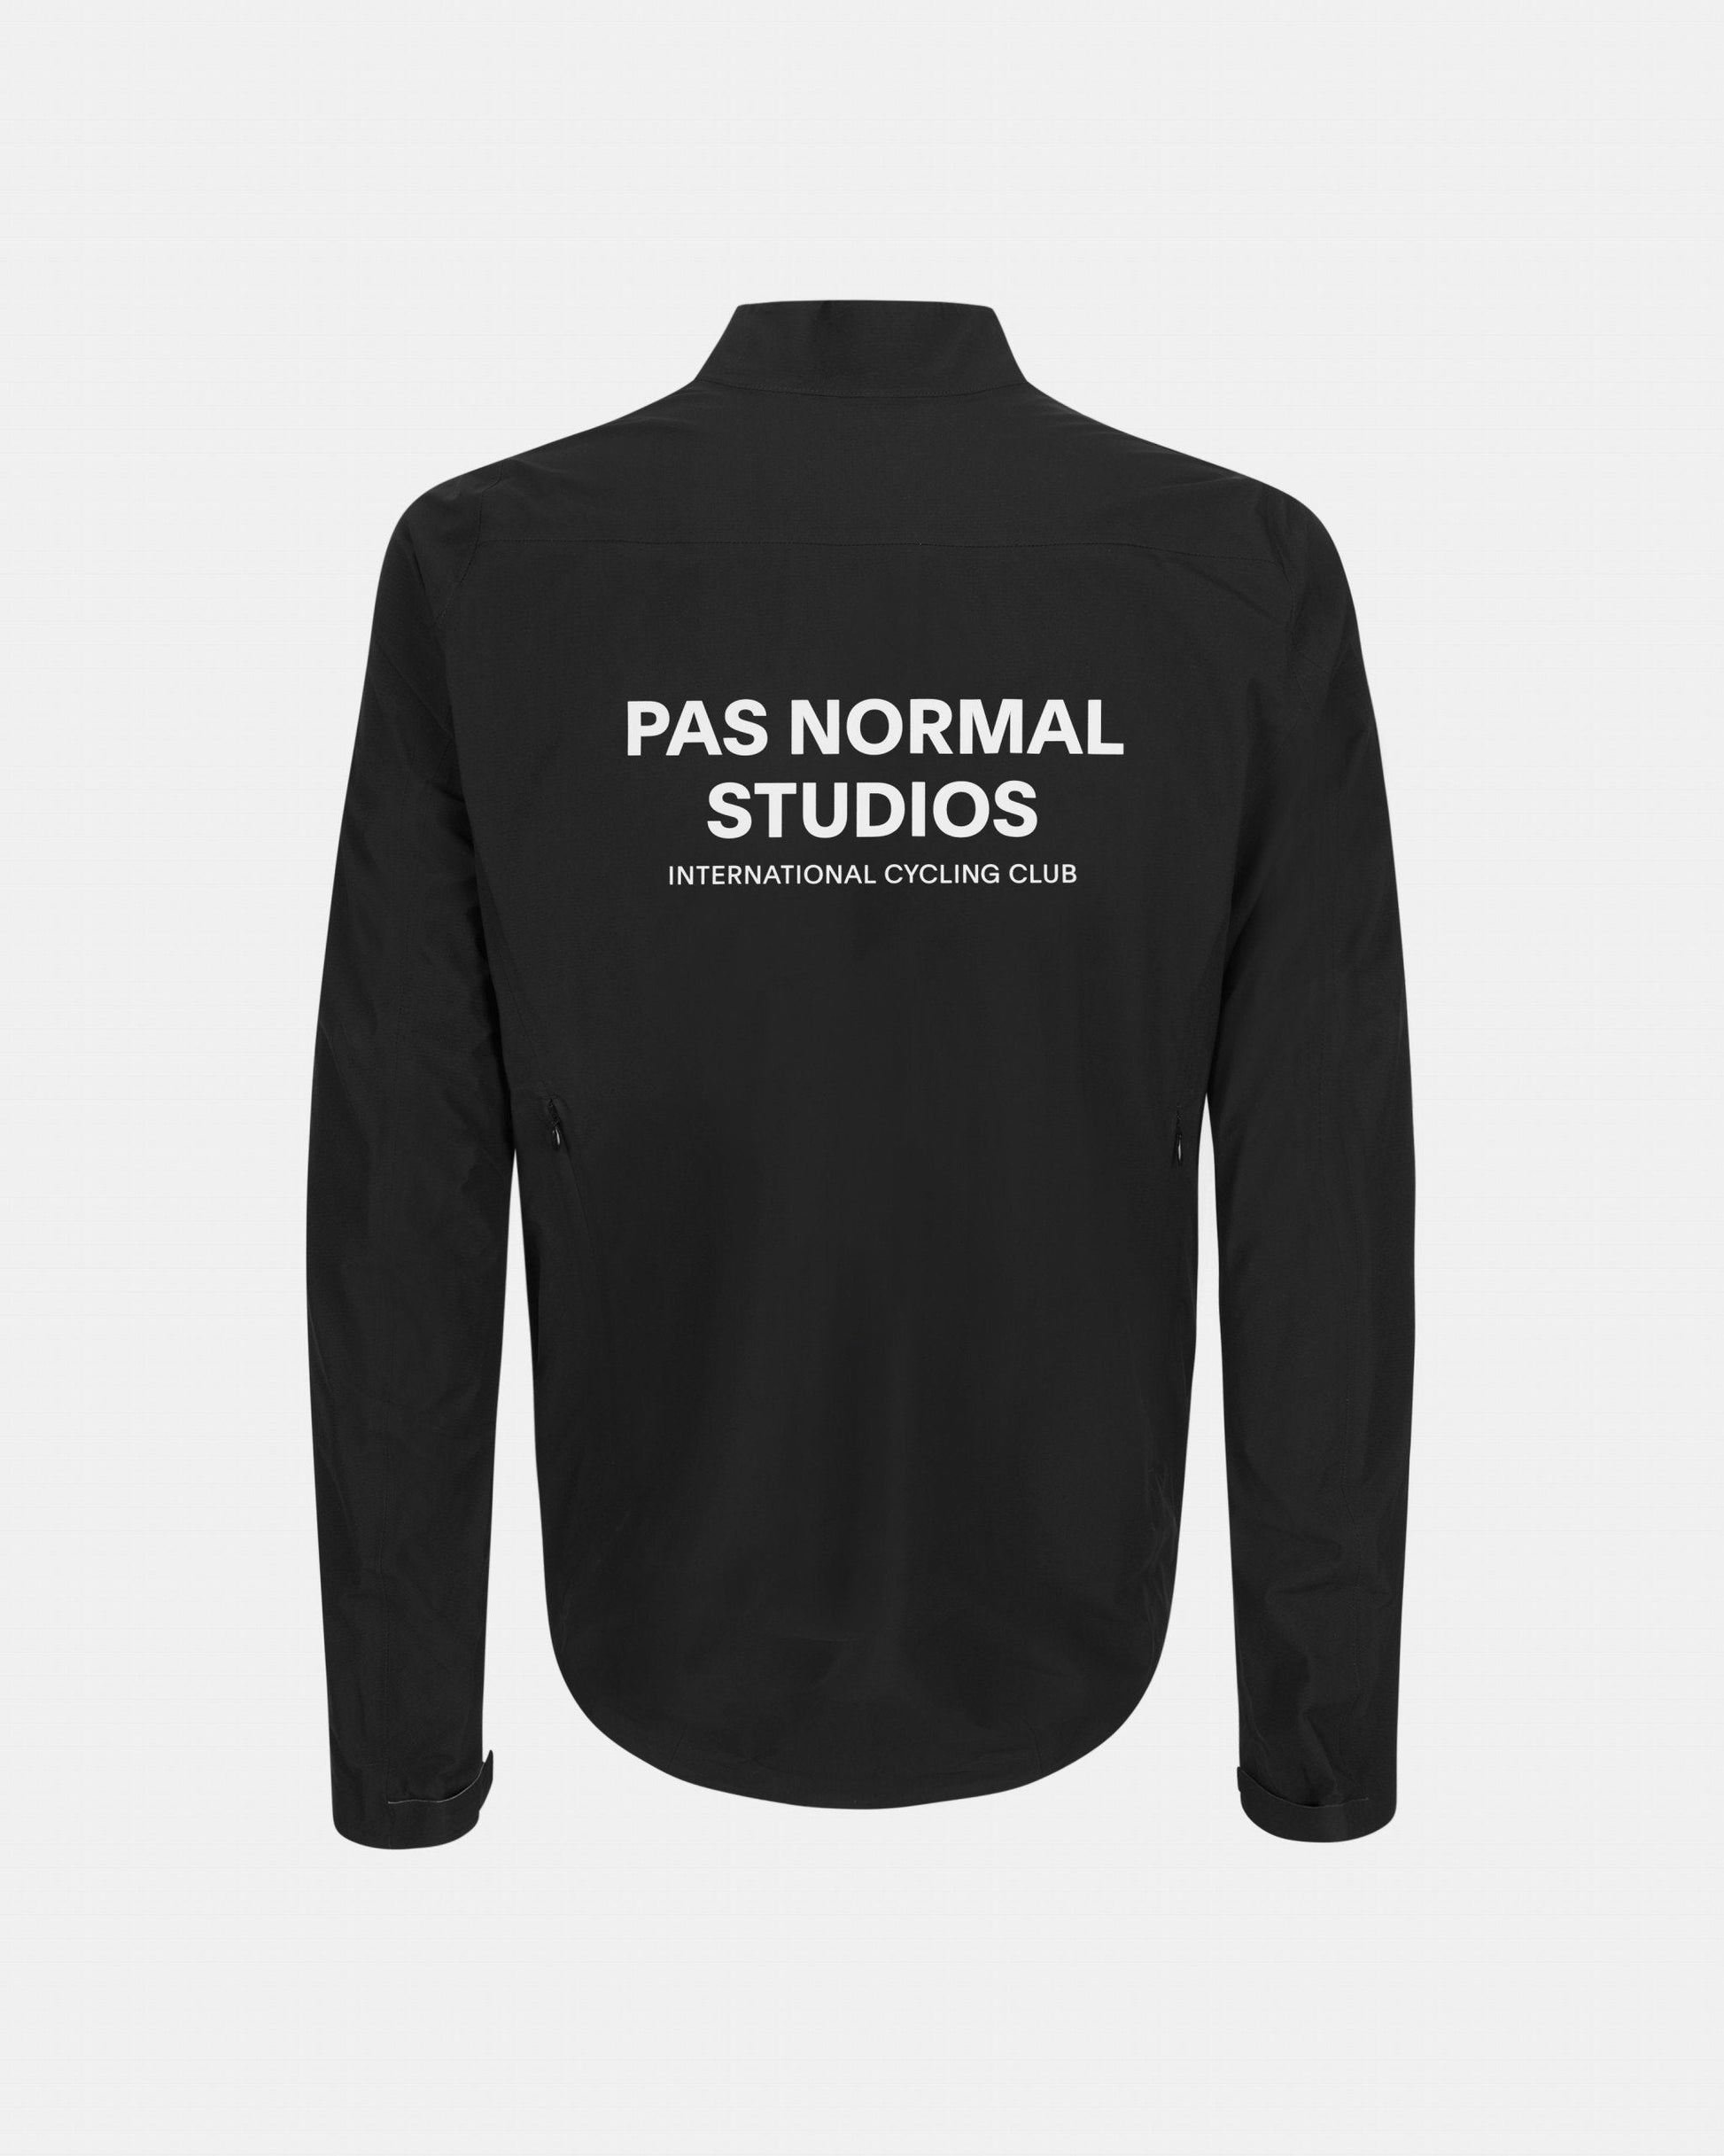 Pas Normal Studios - Veste Shield Homme Noire Vestes Pas Normal Studios 